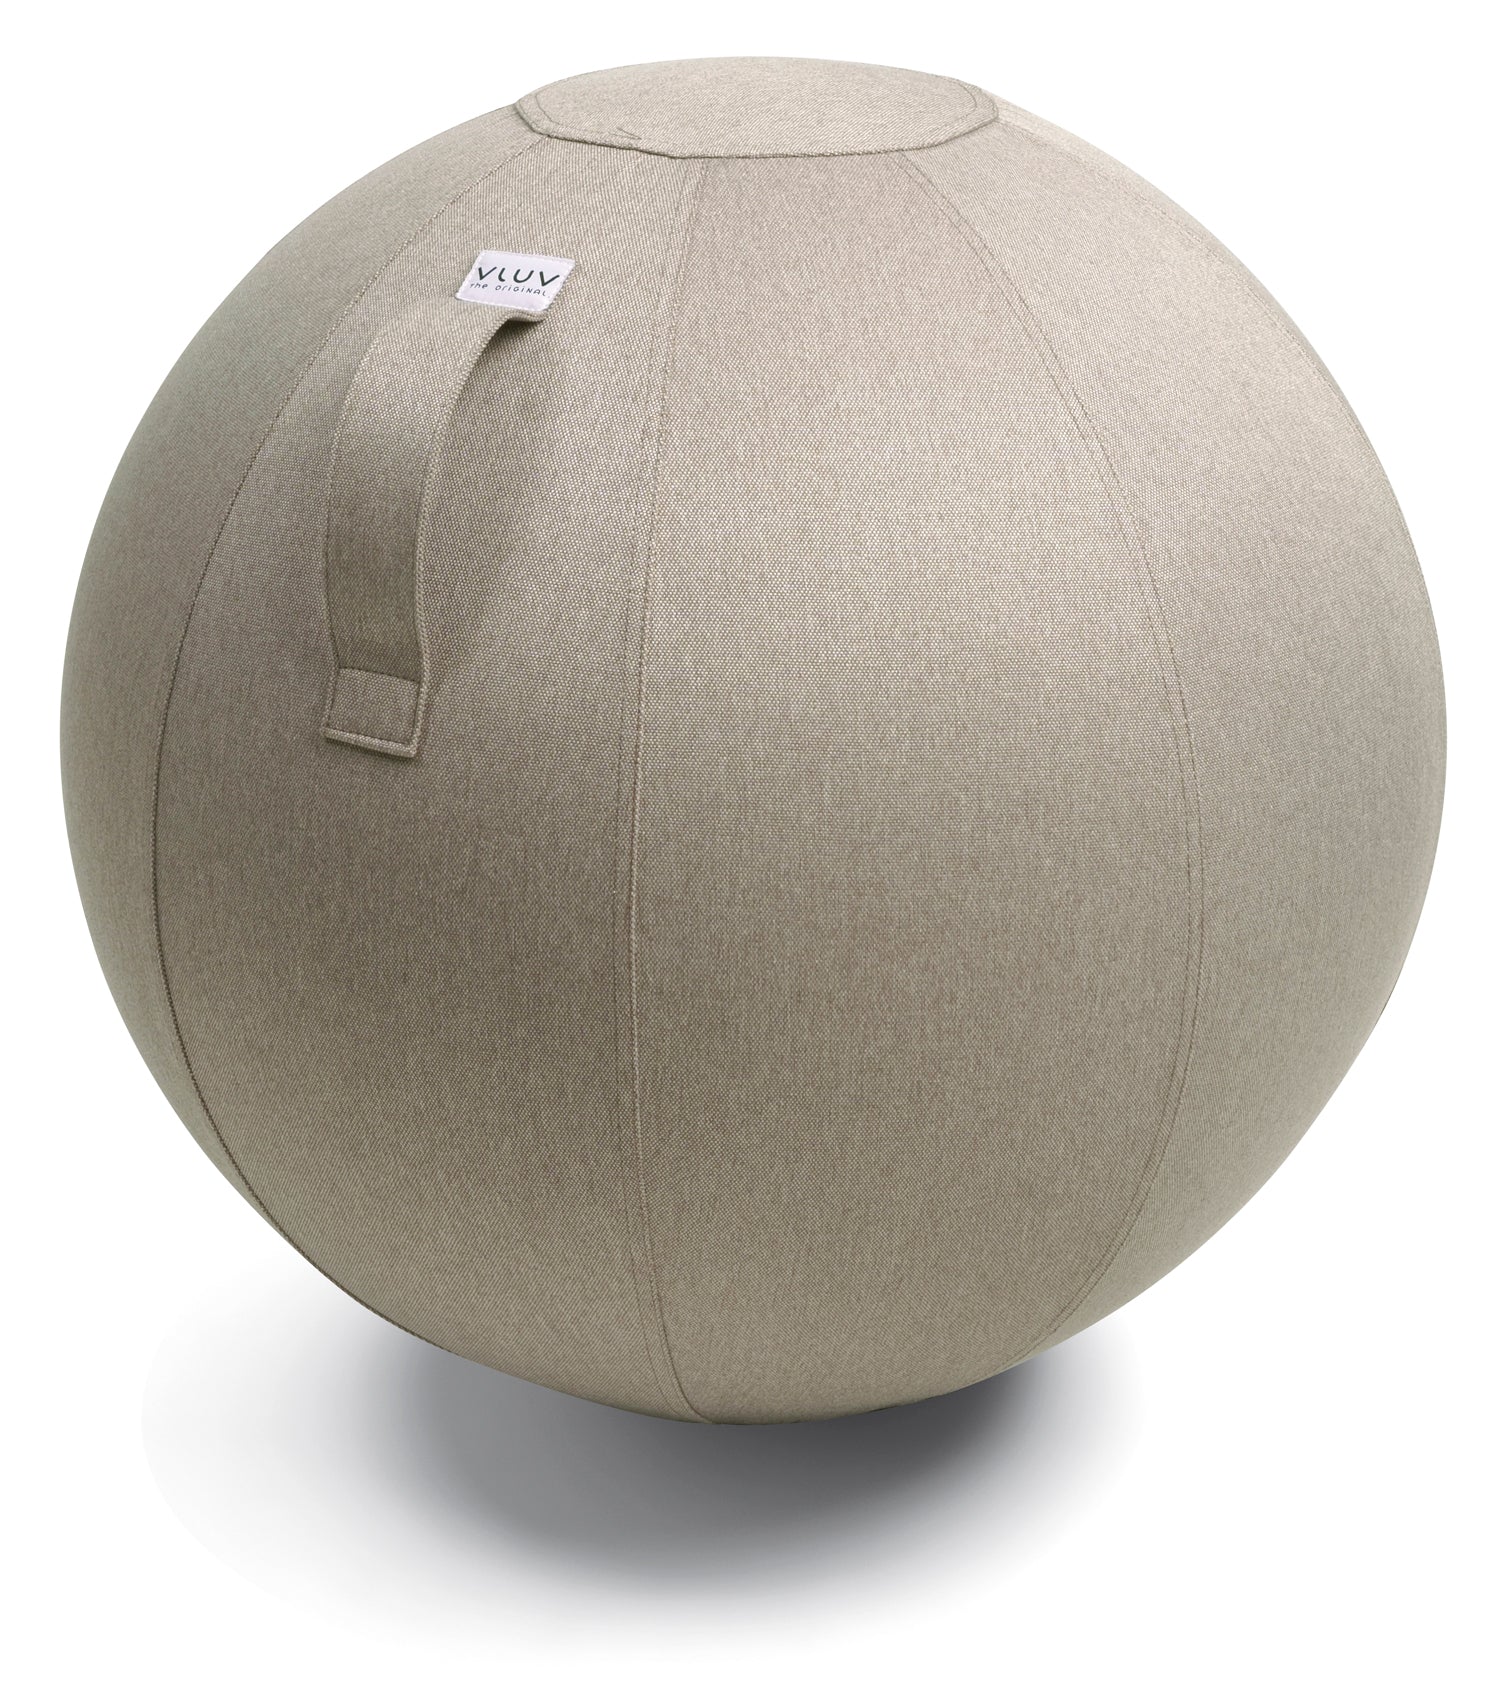 Vor weißem Hintergrund sieht man einen beigen Sitzball. Der Bezug ist aus einem strukturierten Möbelstoff gefertigt.